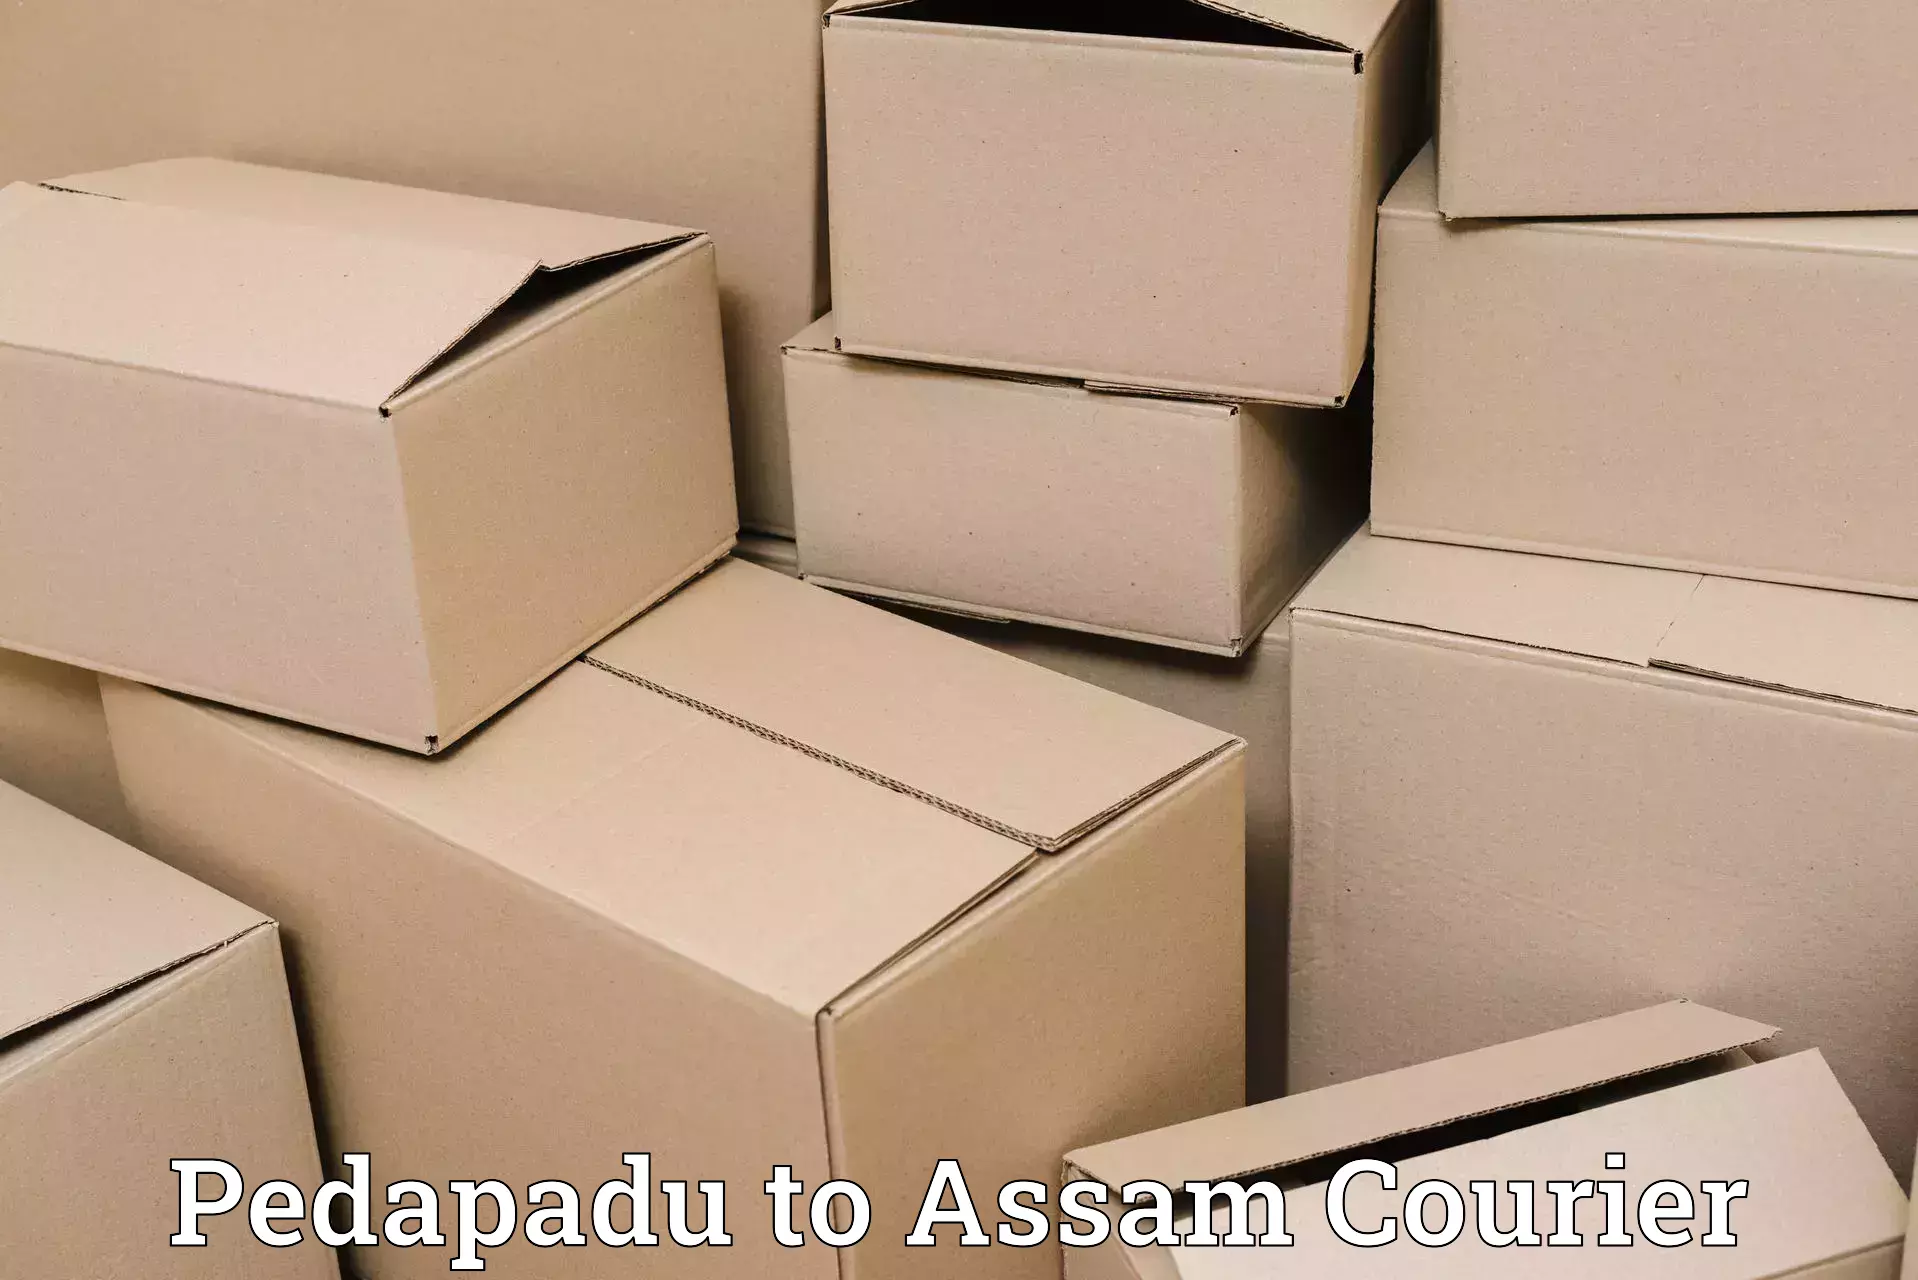 Next-day freight services Pedapadu to Banderdewa